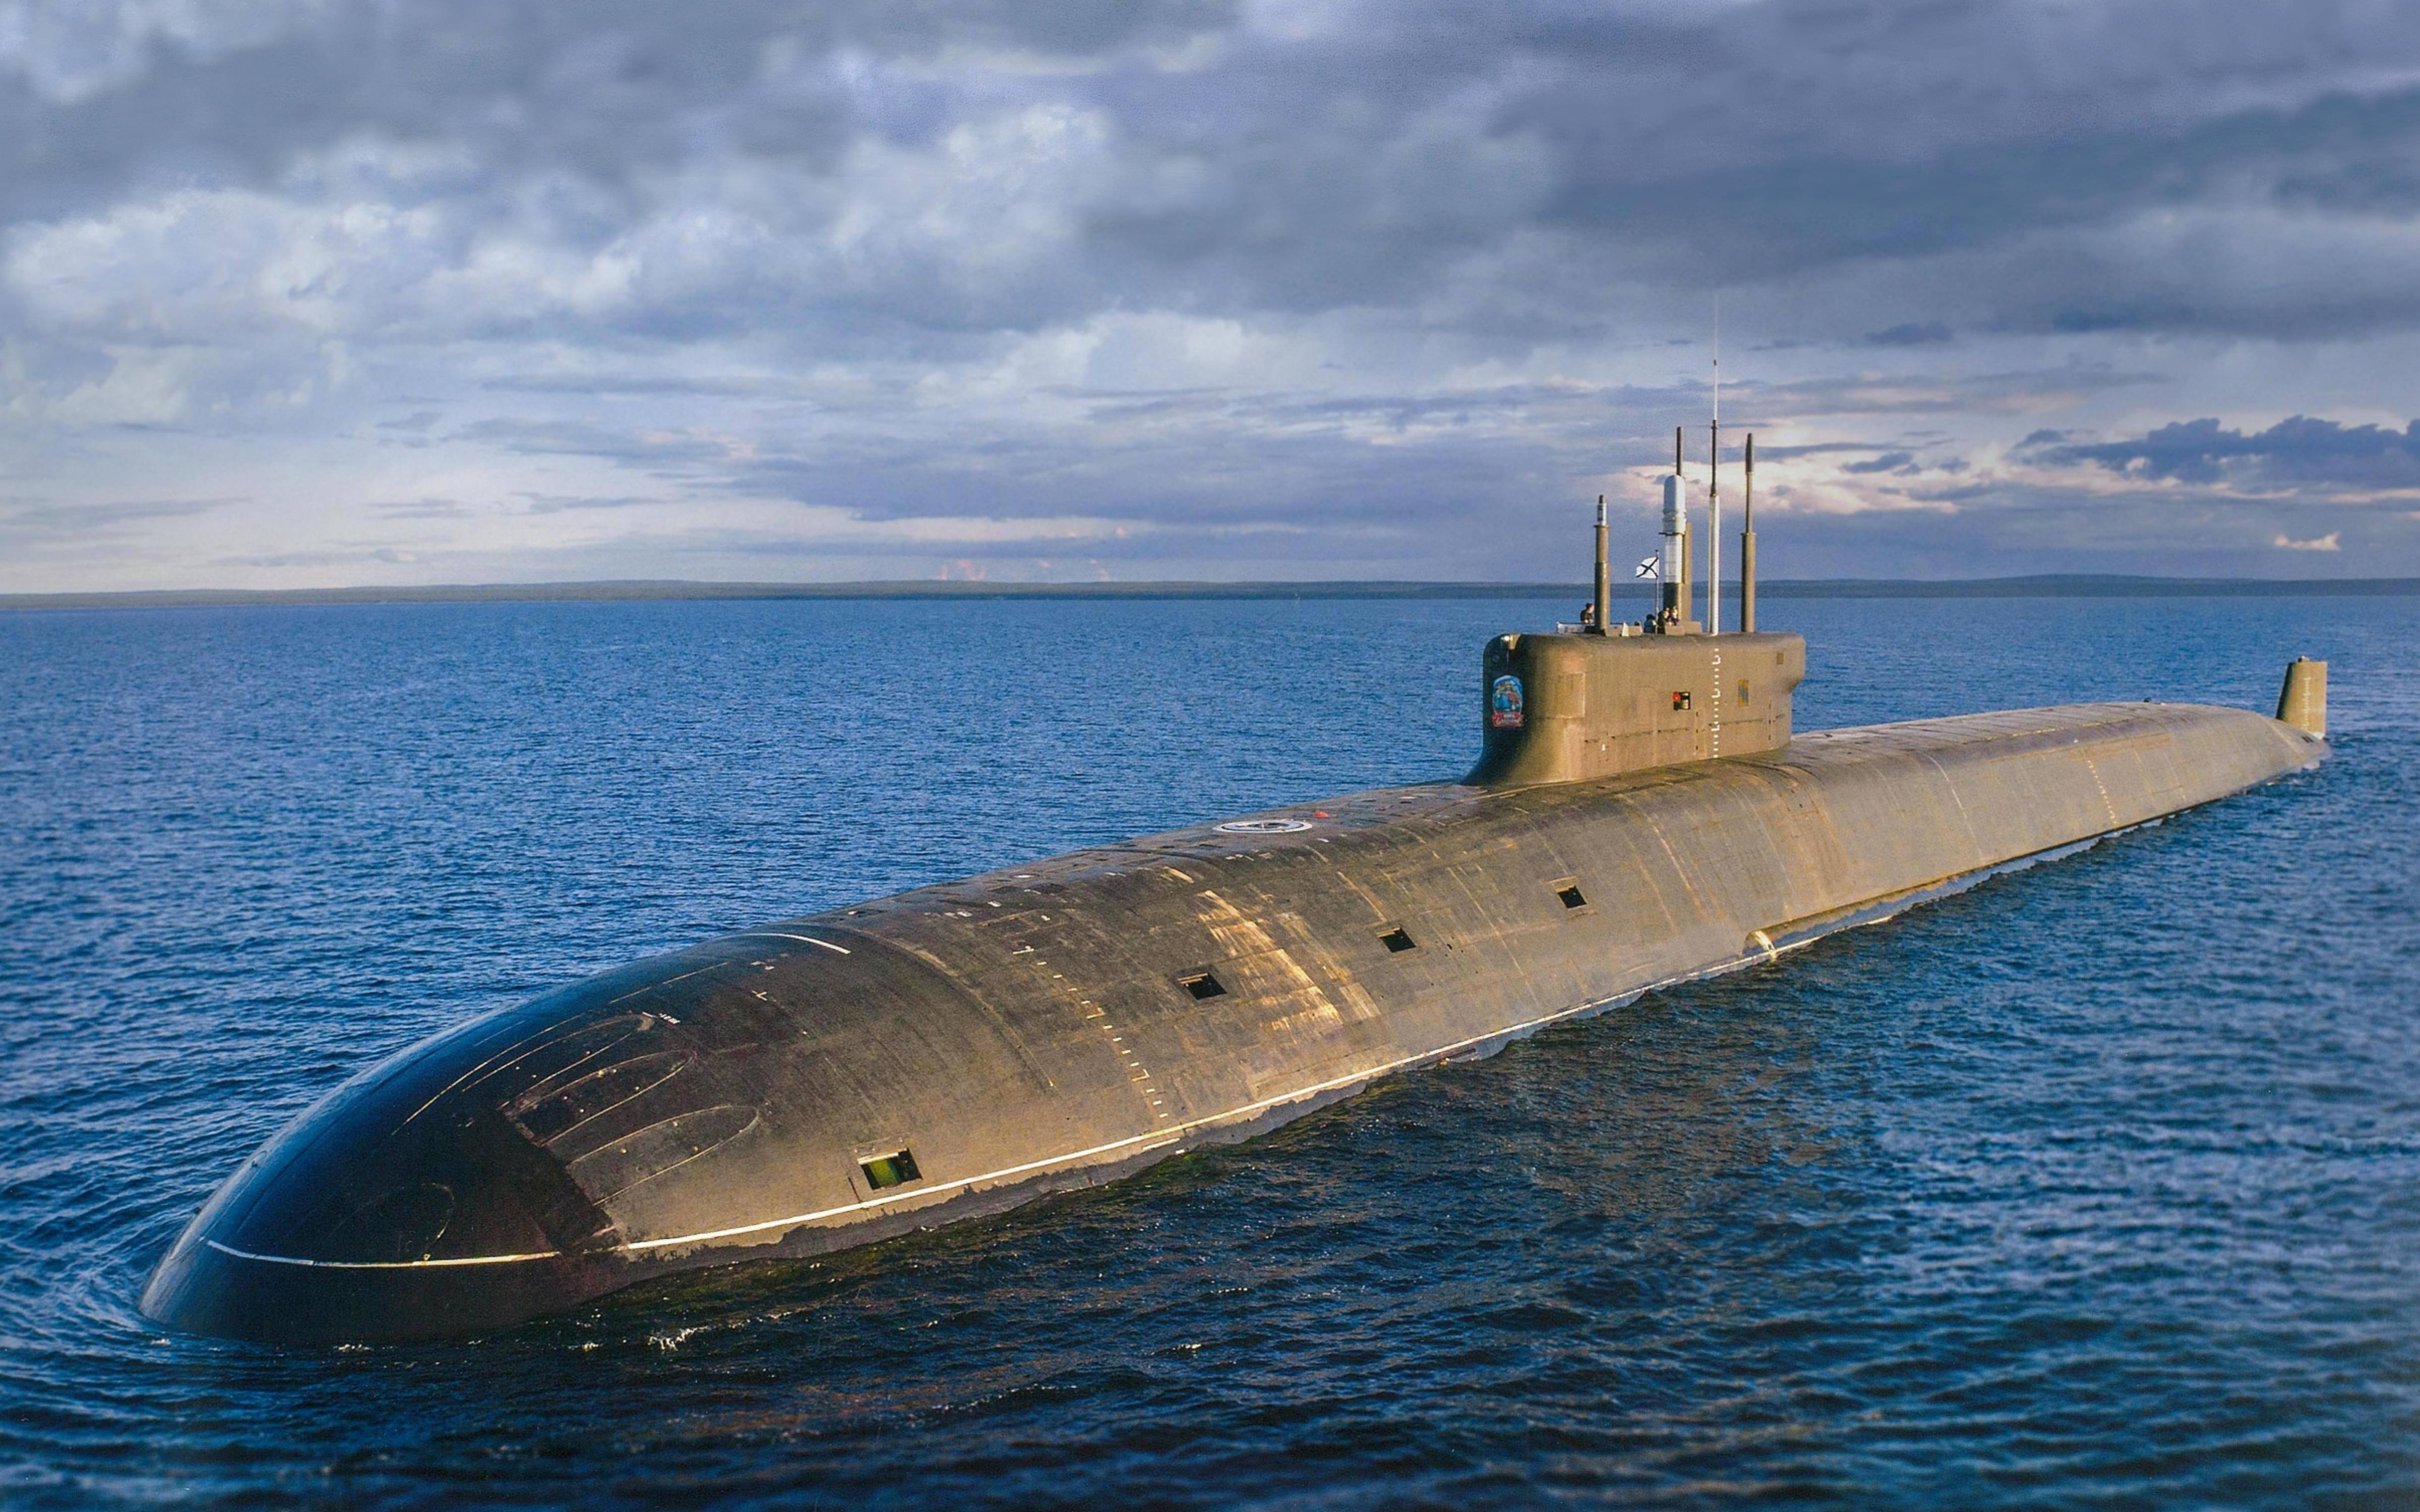 Апл подводные лодки. Борей подводная лодка. Подводная лодка пр. 955 "Борей". К-329 Белгород атомная подводная лодка.